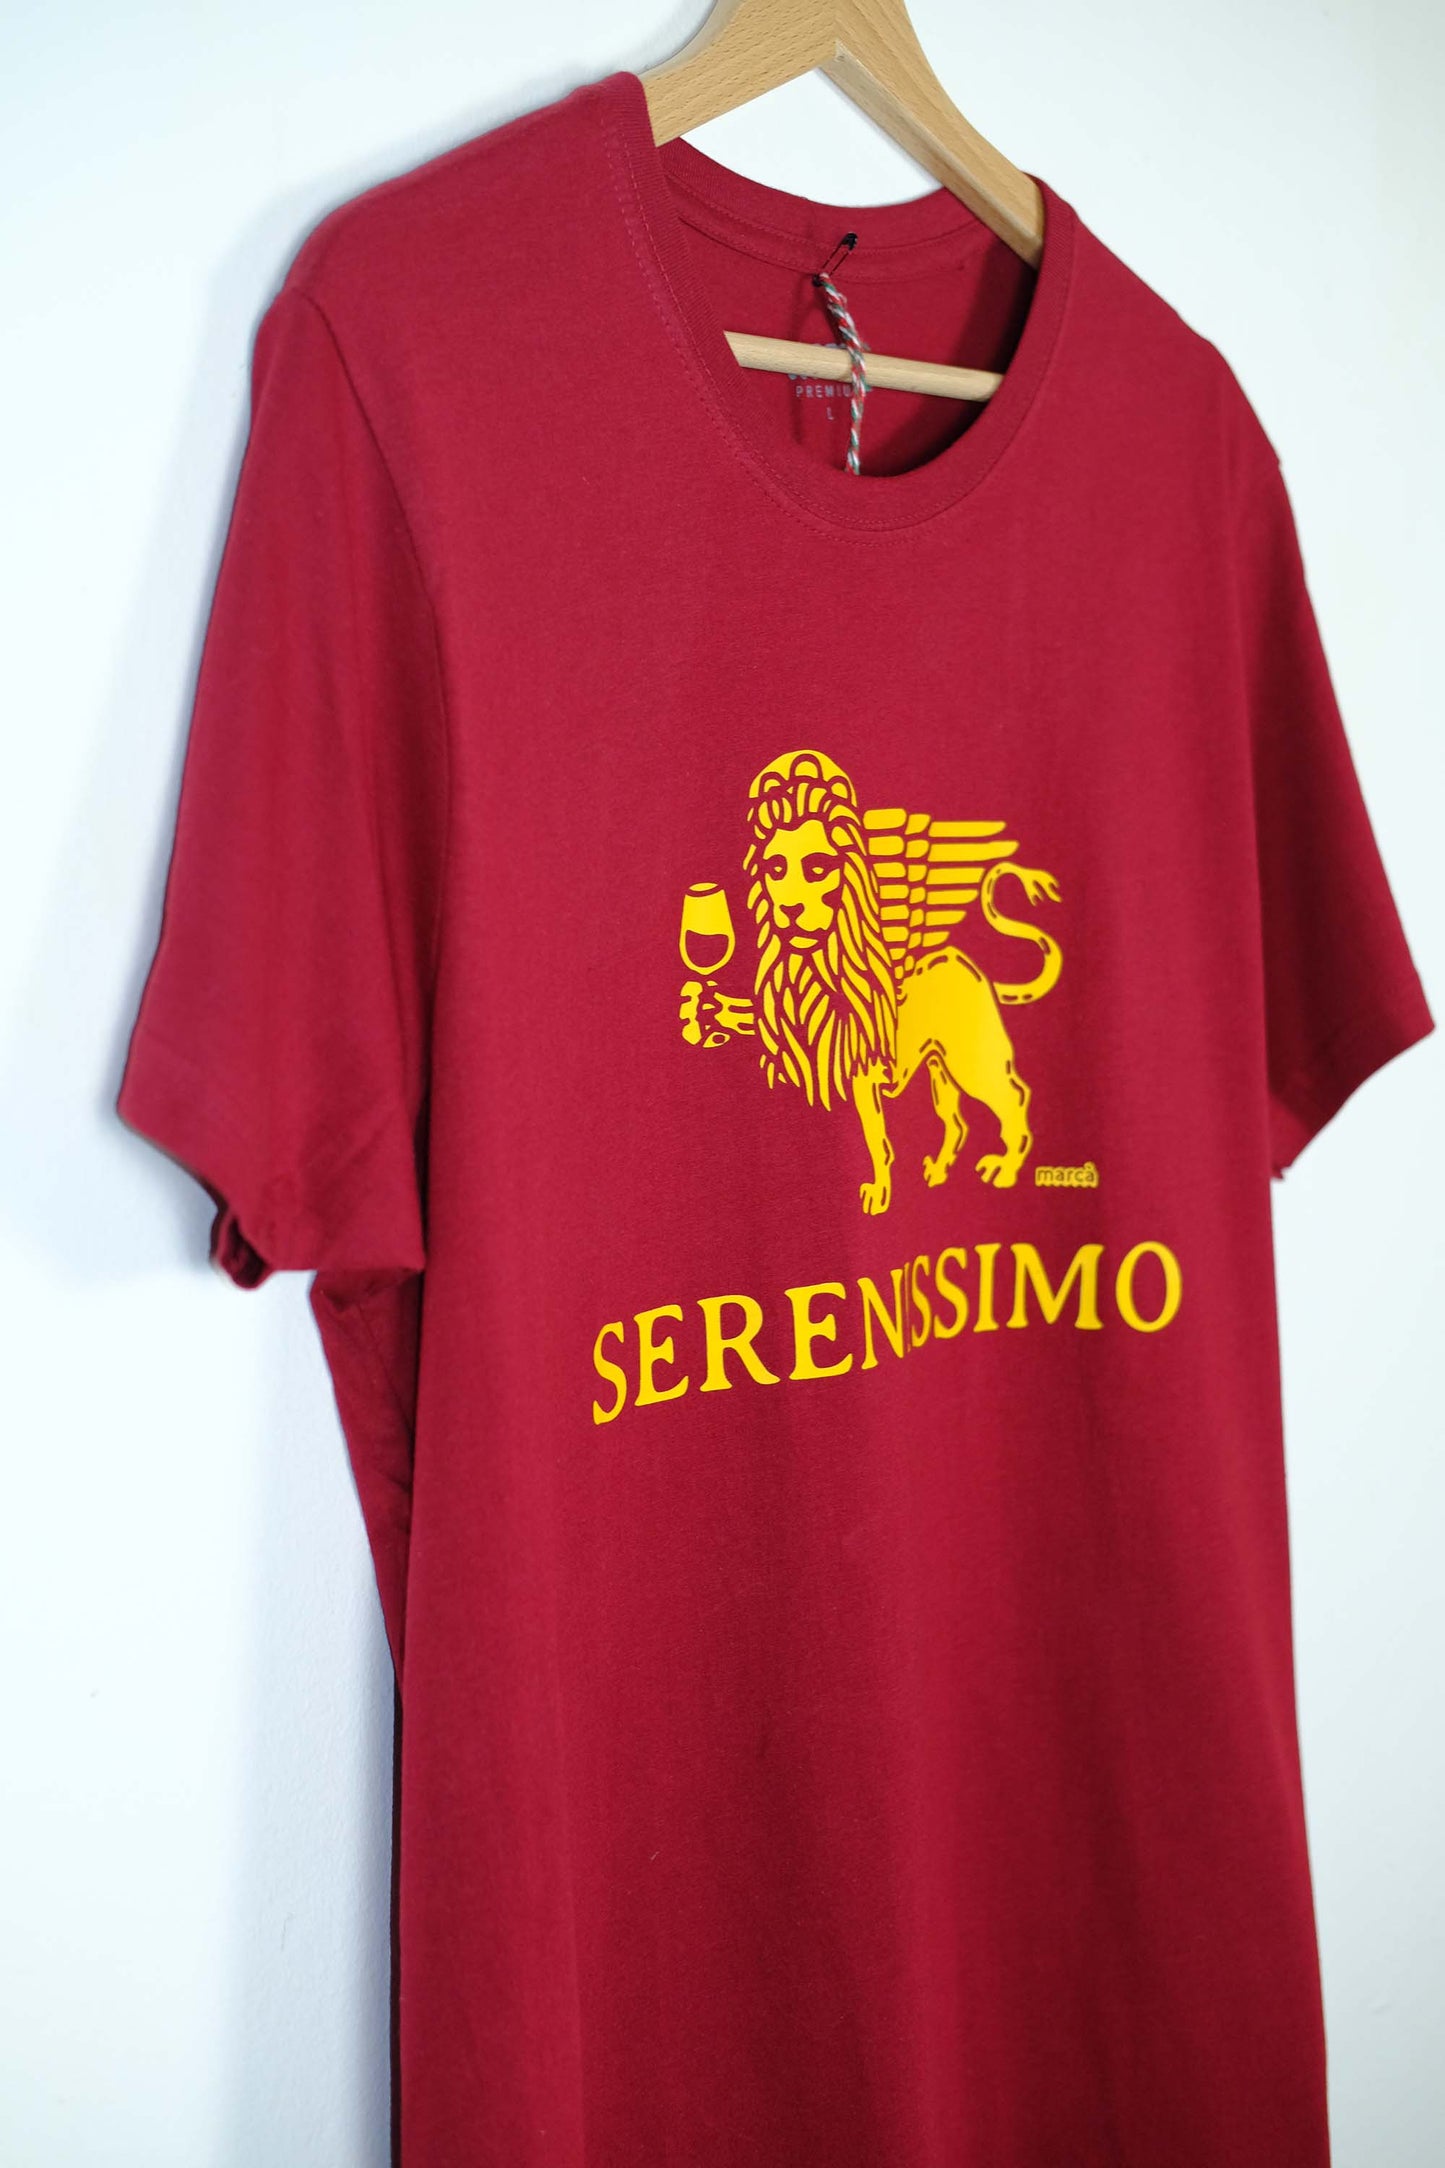 T-Shirt Serenissimo Premium